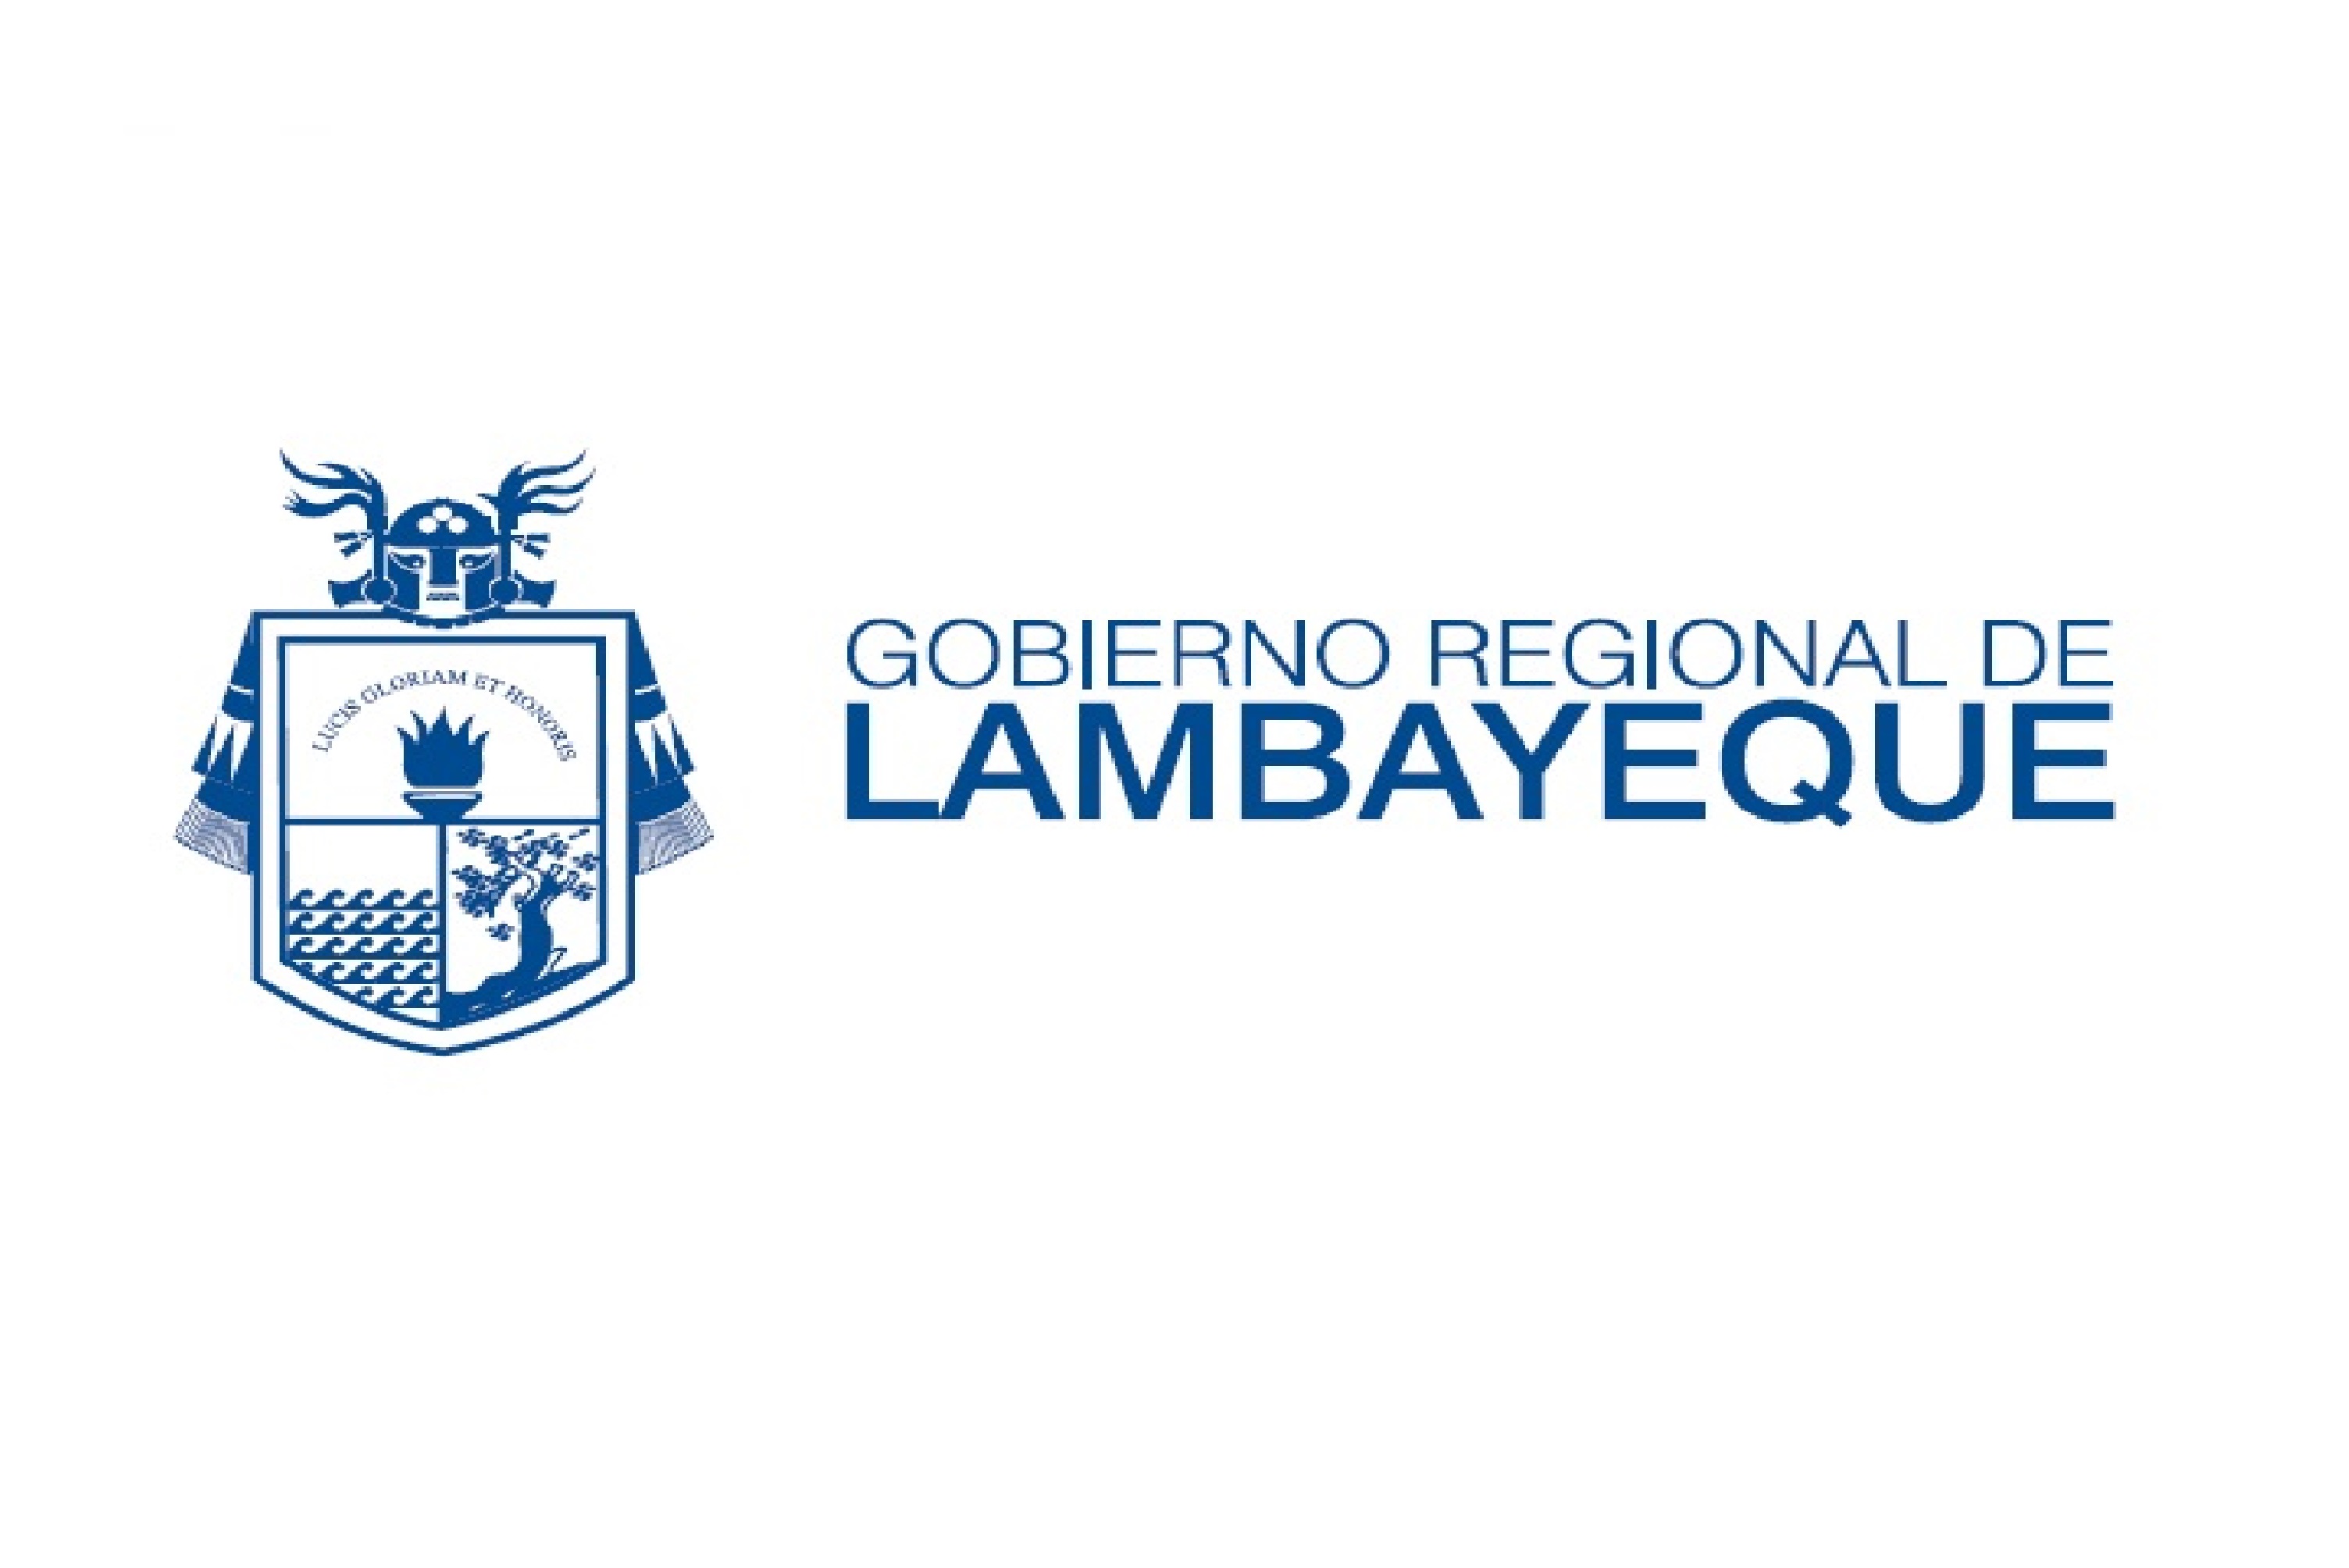 GOBIERNO REGIONAL DE LAMBAYEQUE